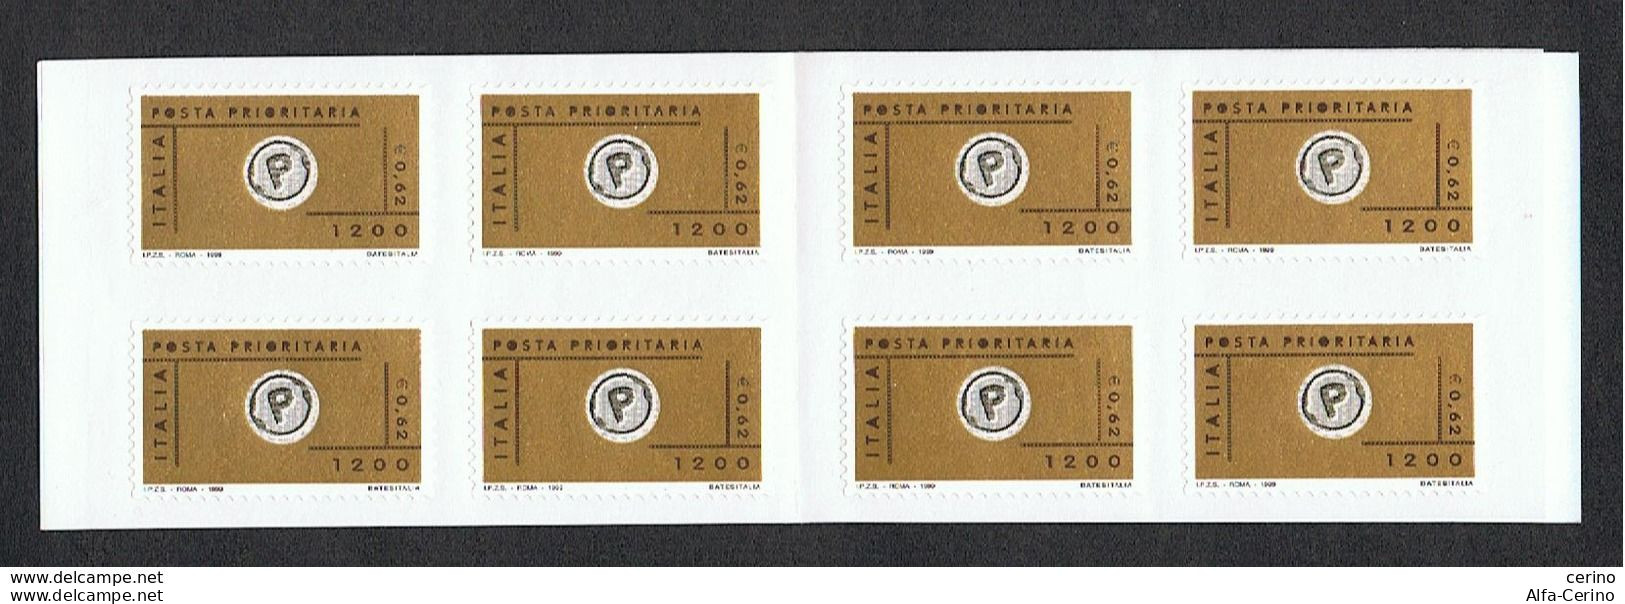 REPUBBLICA:  1999  LIBRETTO  POSTA  PRIORITARIA  -  . 1.200 X 4  POLICROMO  -  SASS. 22 - Postzegelboekjes